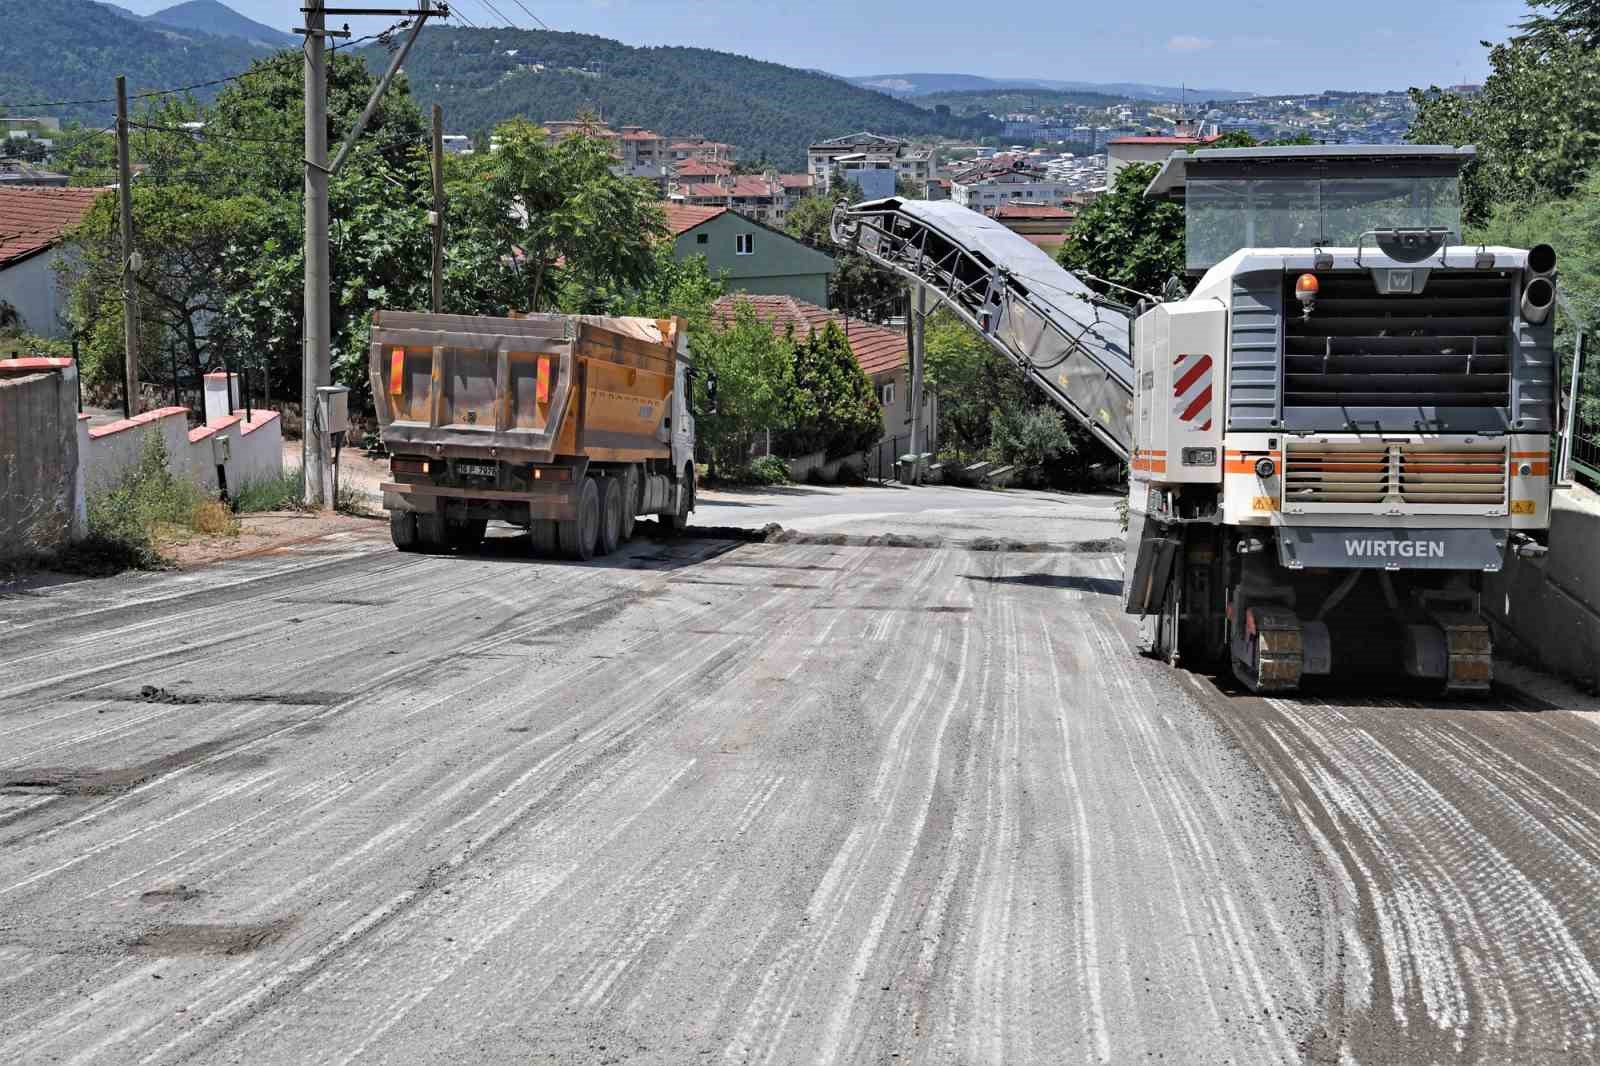 Osmangazi Belediyesi 6 ayda 28 bin ton asfalt çalışması yaptı